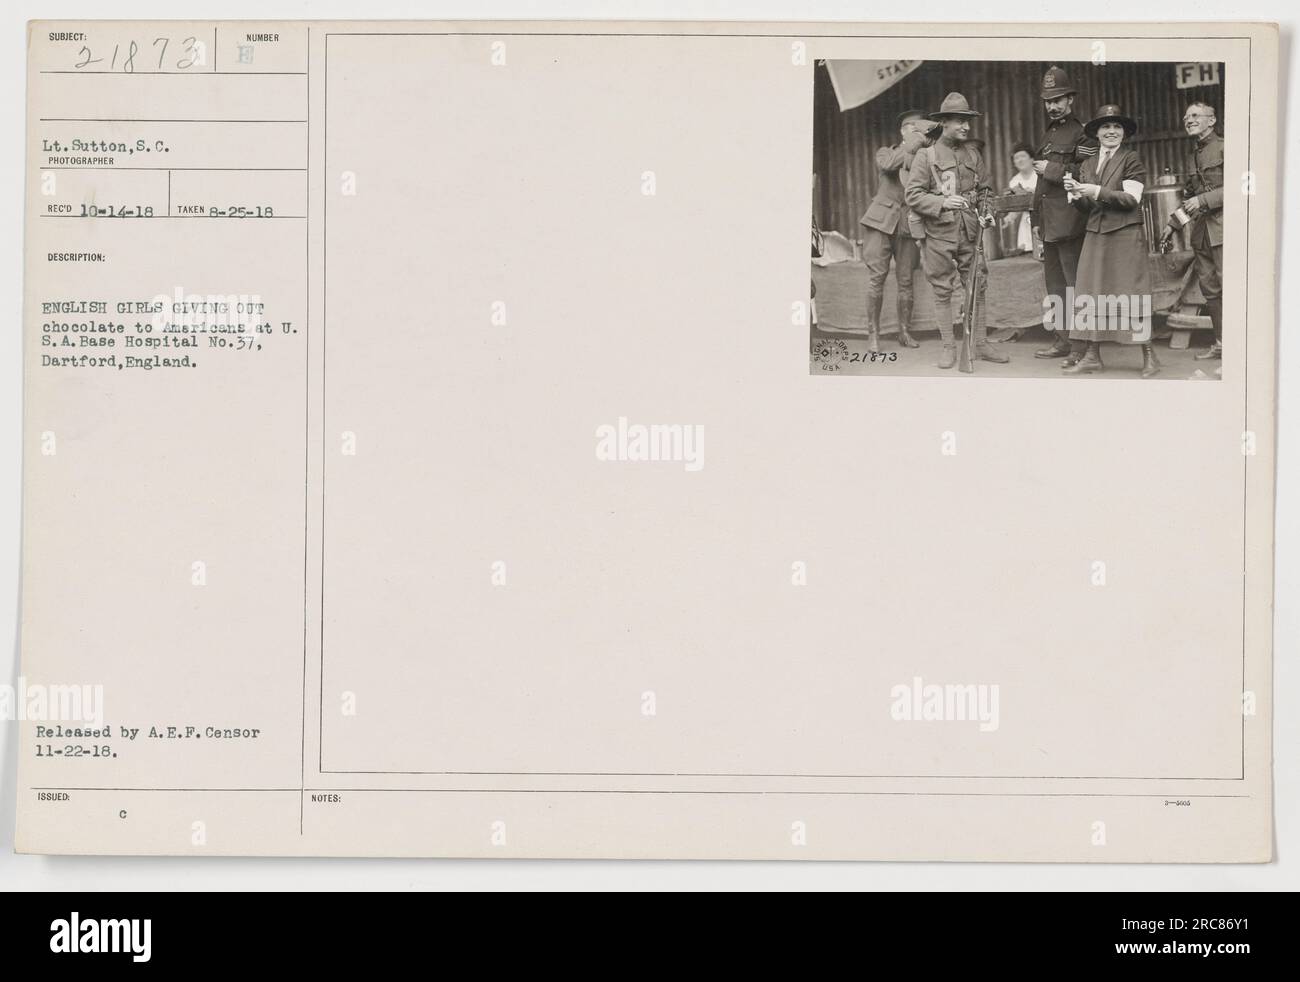 Amerikanische Soldaten erhalten Schokolade von englischen Mädchen in den USA Basiskrankenhaus Nr. 37 in Dartford, England, am 25. August 1918. Foto von LT. Sutton. Veröffentlicht von A.E.F. Zensor am 22. November 1918. Stockfoto